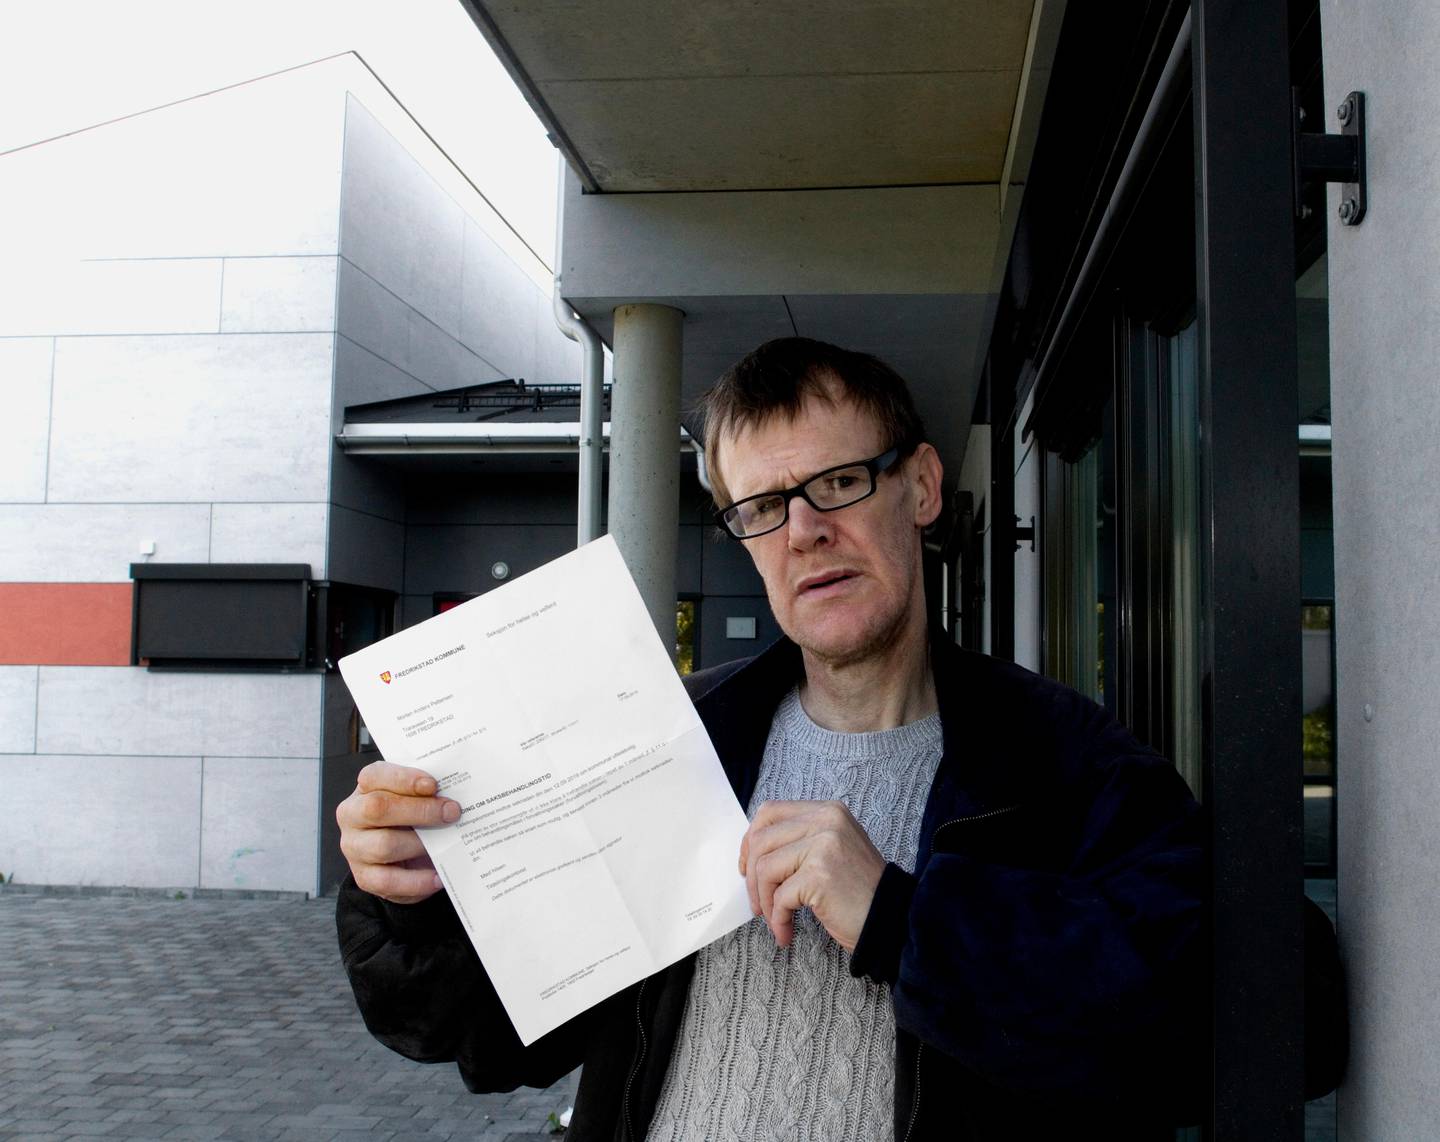 SJANSELØST: Morten Pettersen hevder han er sjanseløs til å betale regninga på nesten 23.000 kroner for reparasjon av trygdeleiligheten han hadde på Rolvsøy, som ble vandalisert mens han selv satt i fengsel i fjor.